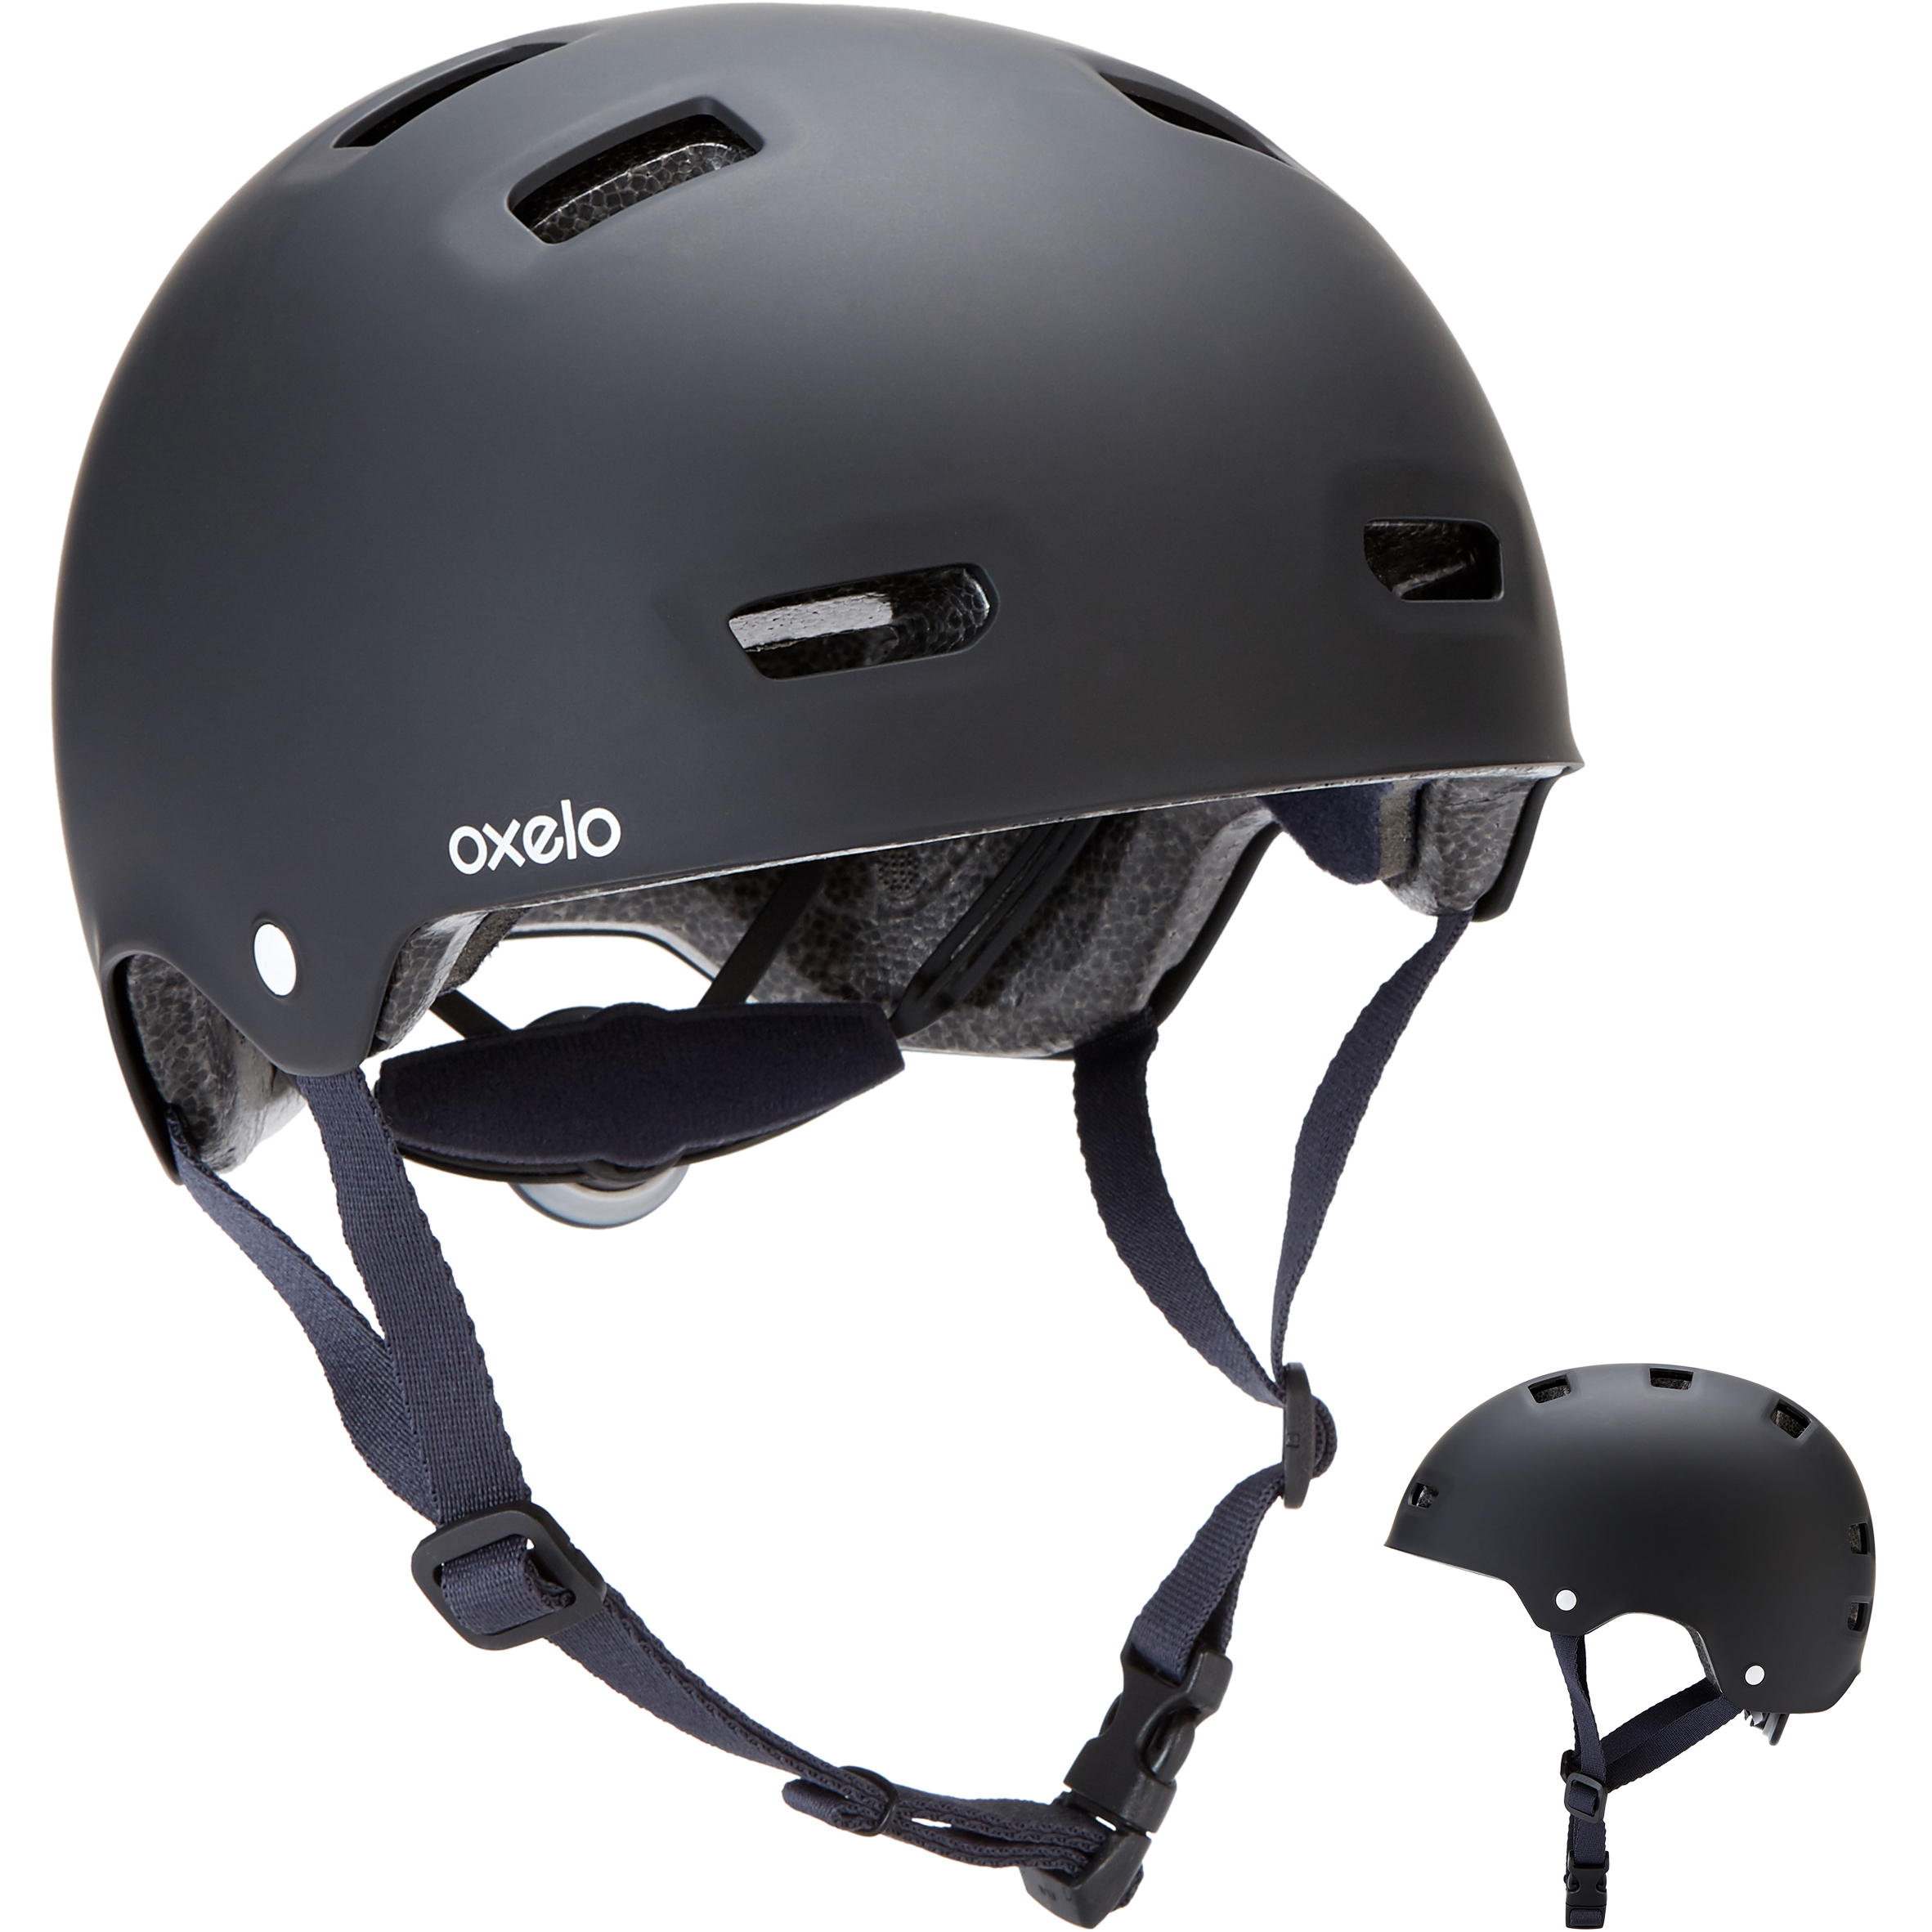 [ส่งฟรี ]หมวกกันน็อคสำหรับอินไลน์สเก็ต สเก็ตบอร์ด และสกู๊ตเตอร์รุ่น MF500 (สีดำ/น้ำเงิน) MF500 Inline Skating Skateboarding Scootering Helmet - Black/Blue หมวกกันน็อกเด็ก หมวกกันน็อก คุณภาพดี ออกกำลังกาย